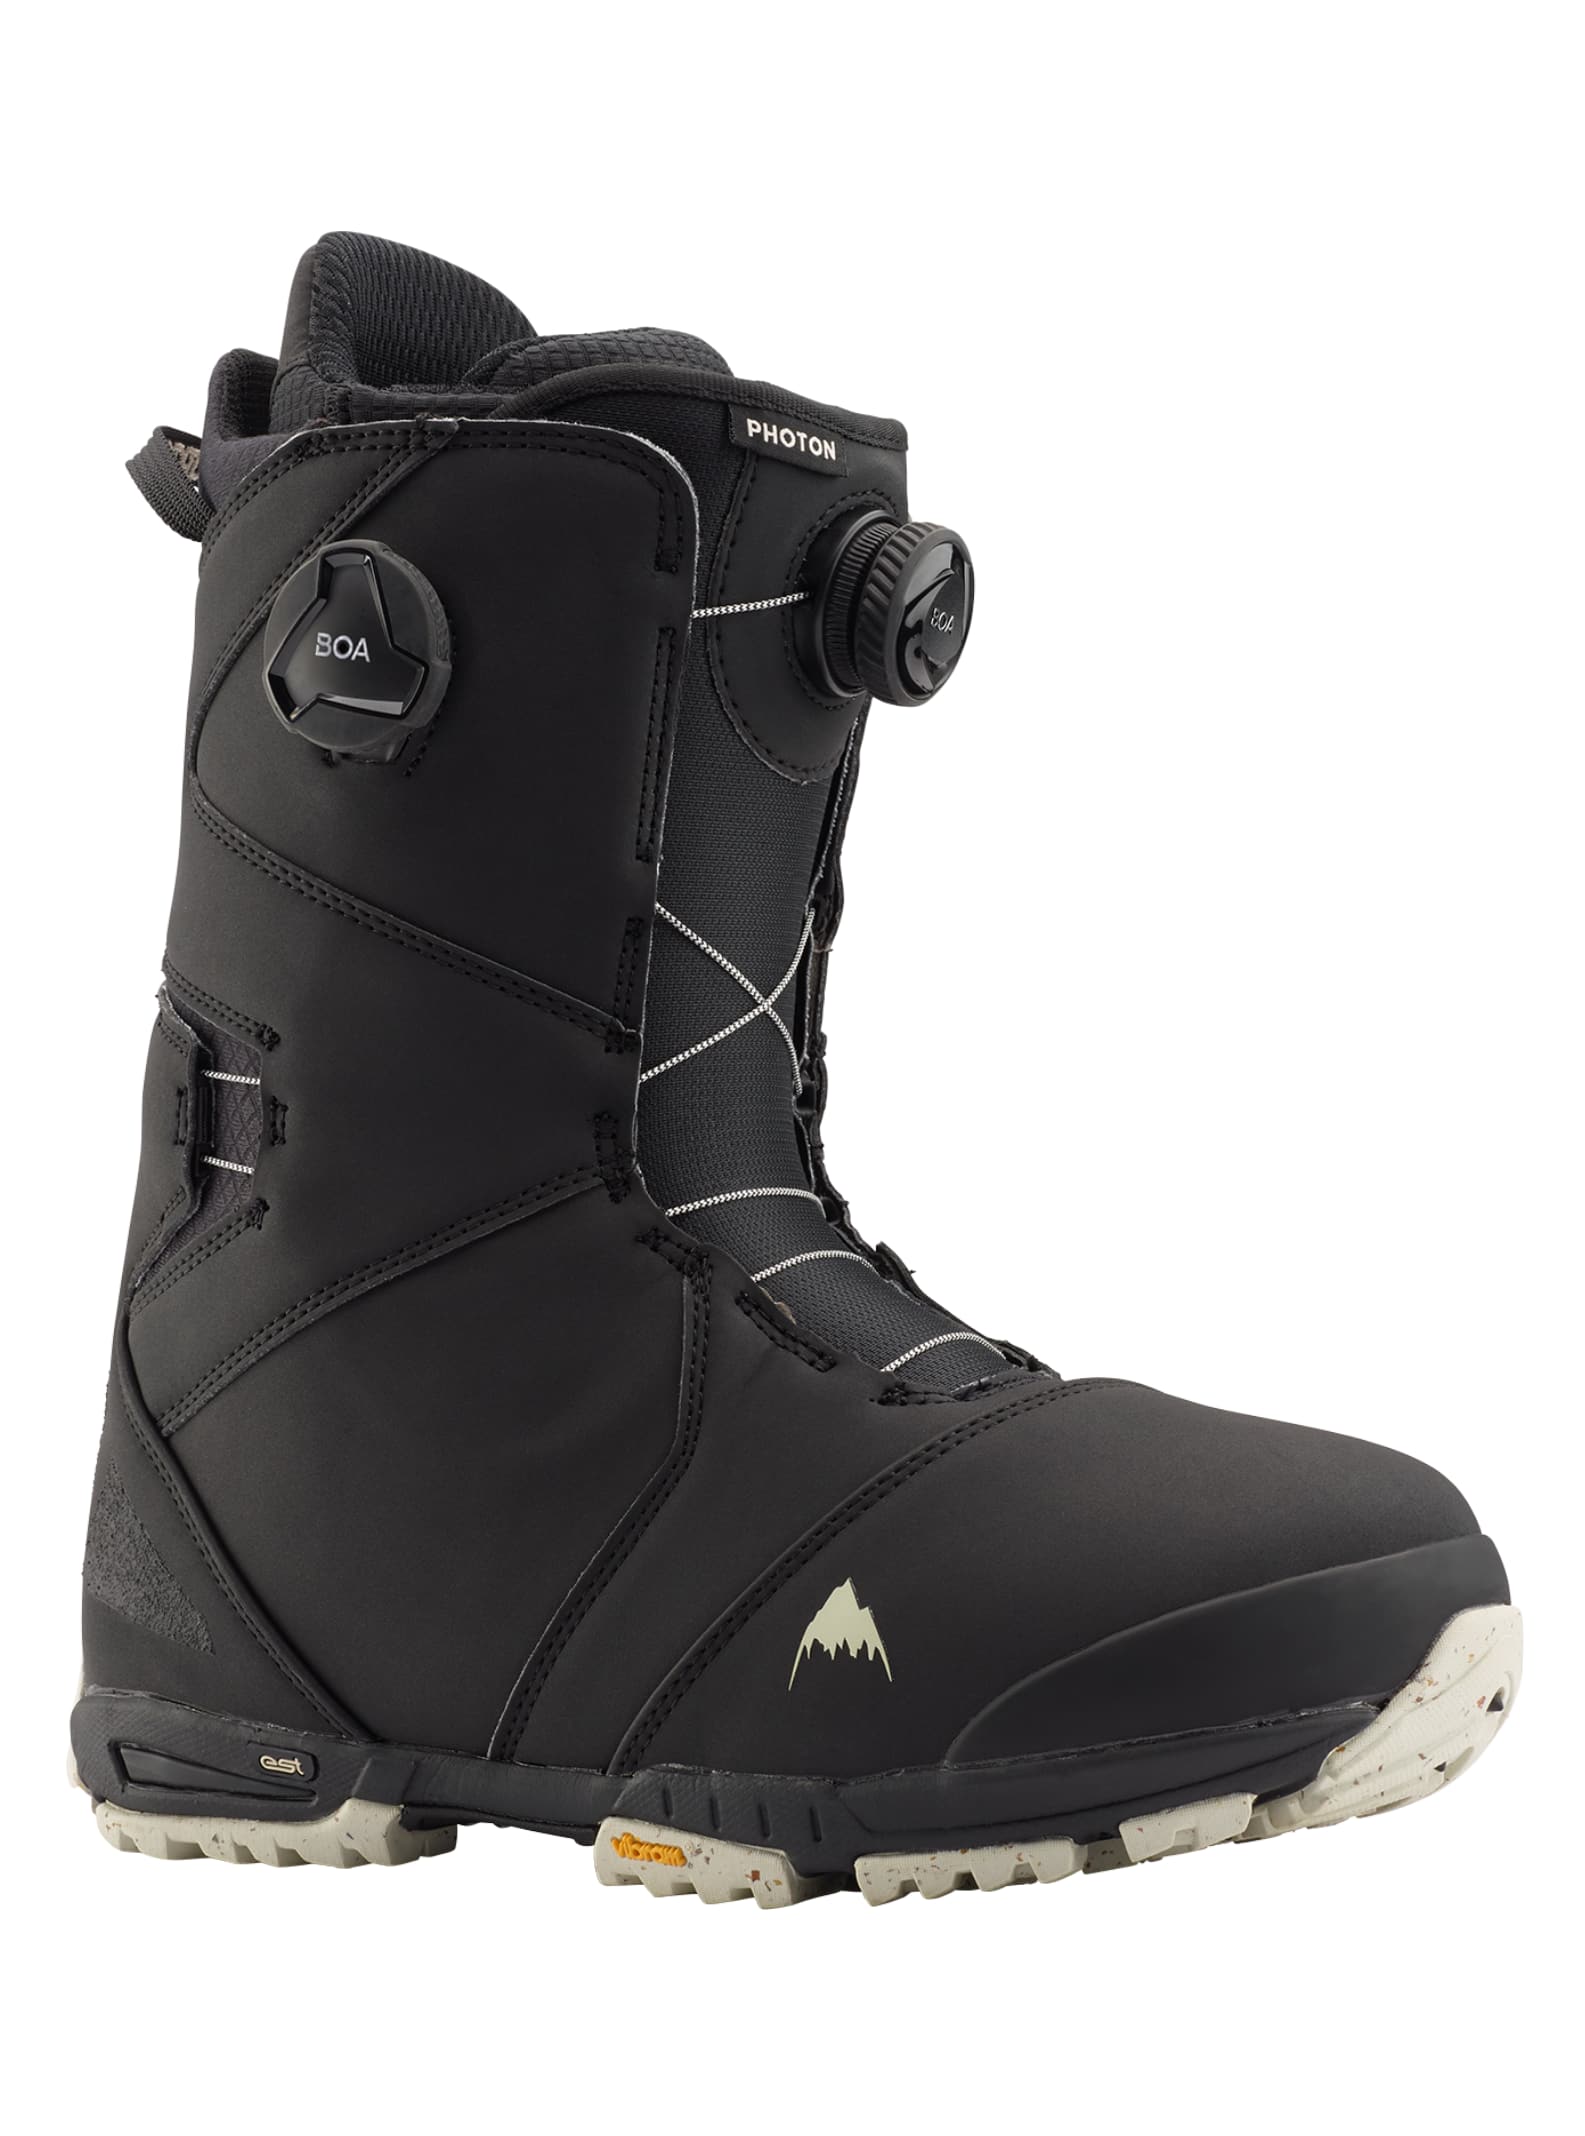 Burton - Boots de snowboard Photon Boa® homme, Black, 10